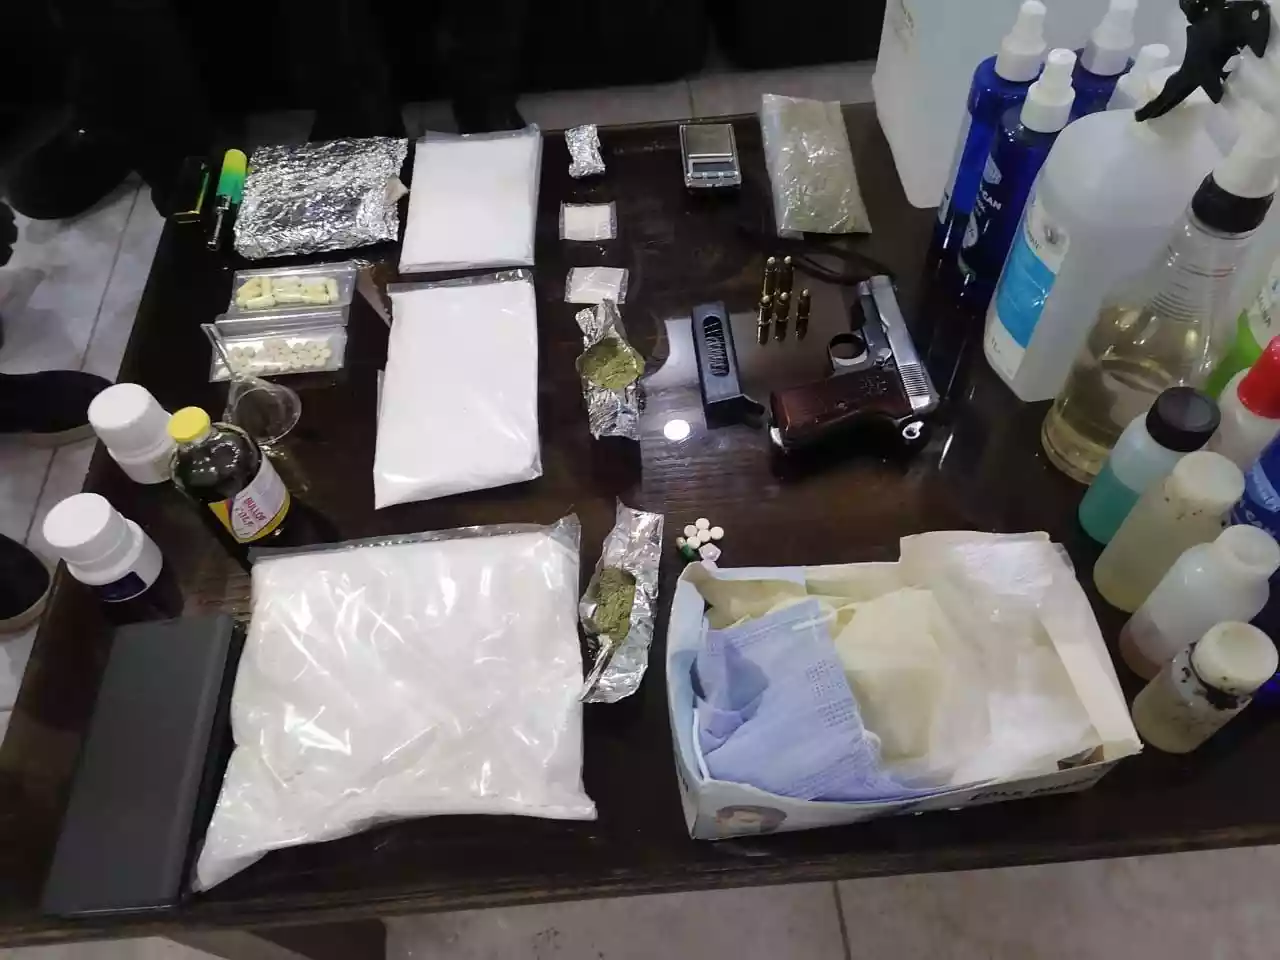 عمليات نوعية توقع بتجار مخدرات ومروجين بالعقبة والرمثا (صورة)